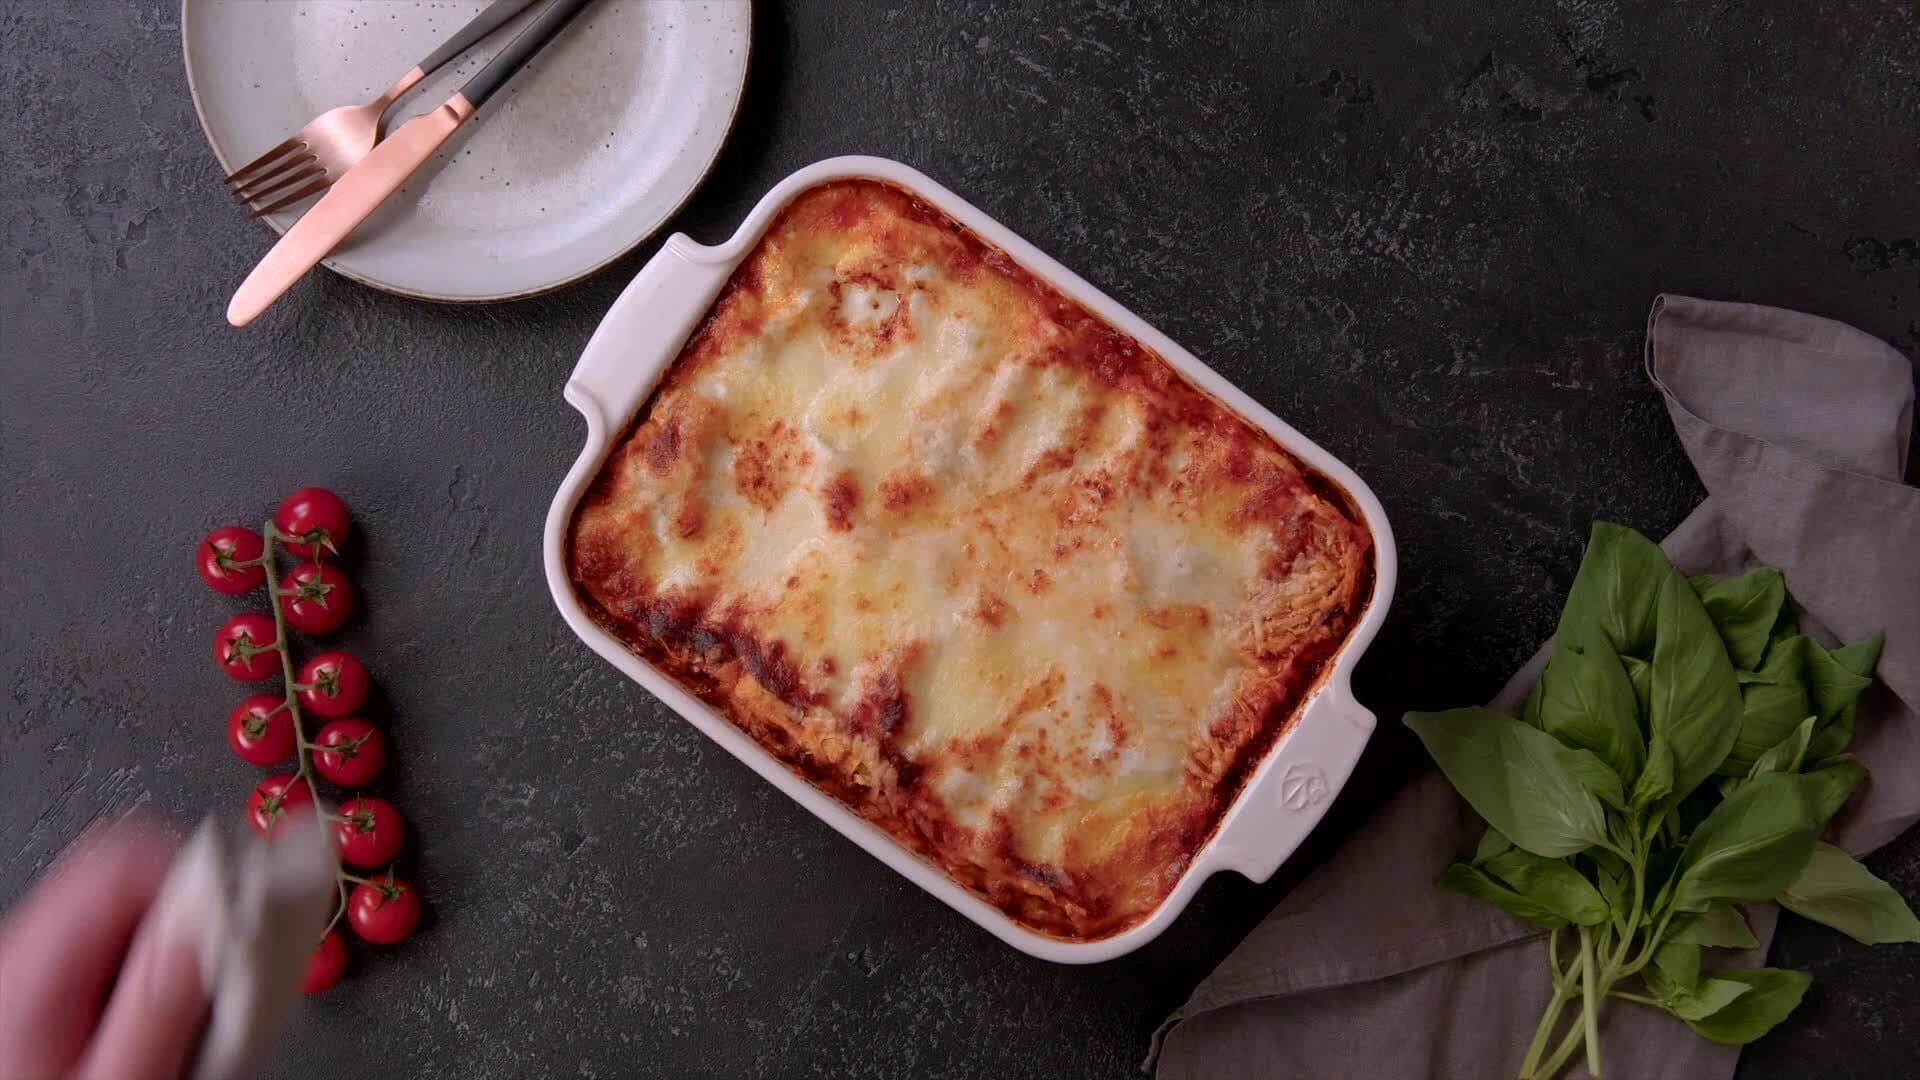 Unsere Lasagne frisch aus dem Ofen steht in einer weißen Auflaufform auf schwarzem Untergrund. Dazu ein Teller mit Besteck, ein Tomatenstrauch und Basilikum.